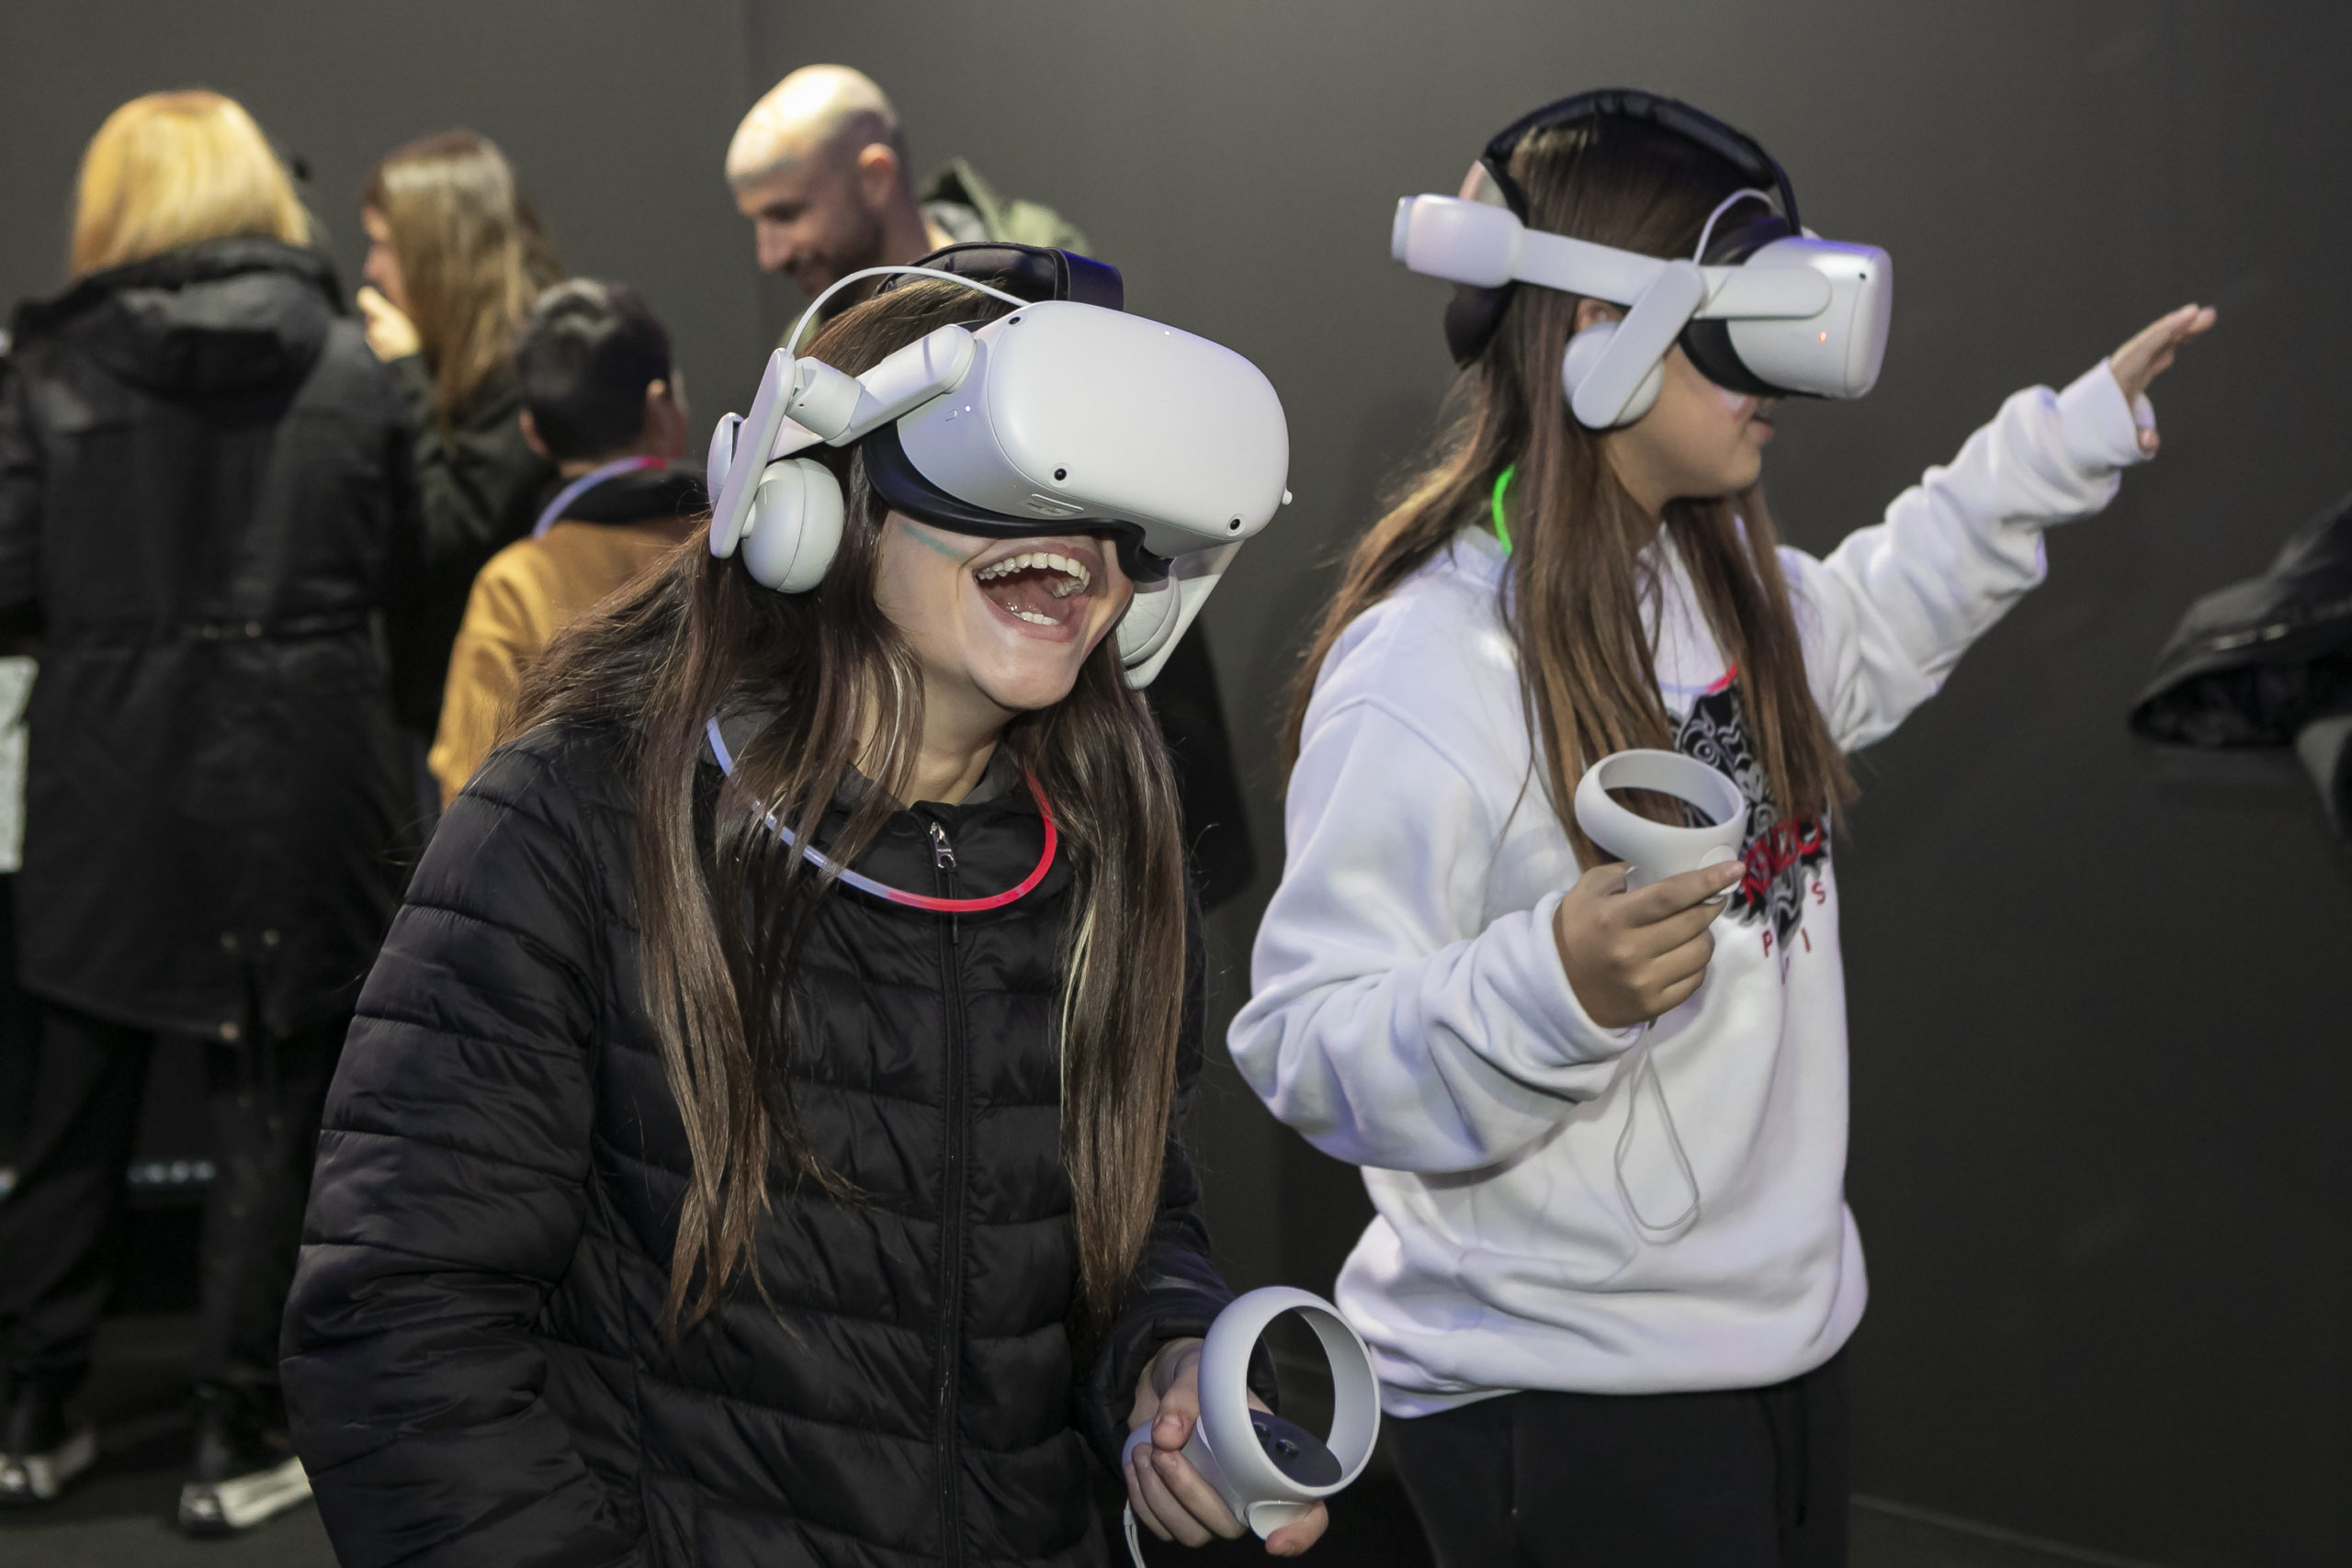 Mobile World Capital Barcelona participates in Festival de la Infància to bring technology closer to children